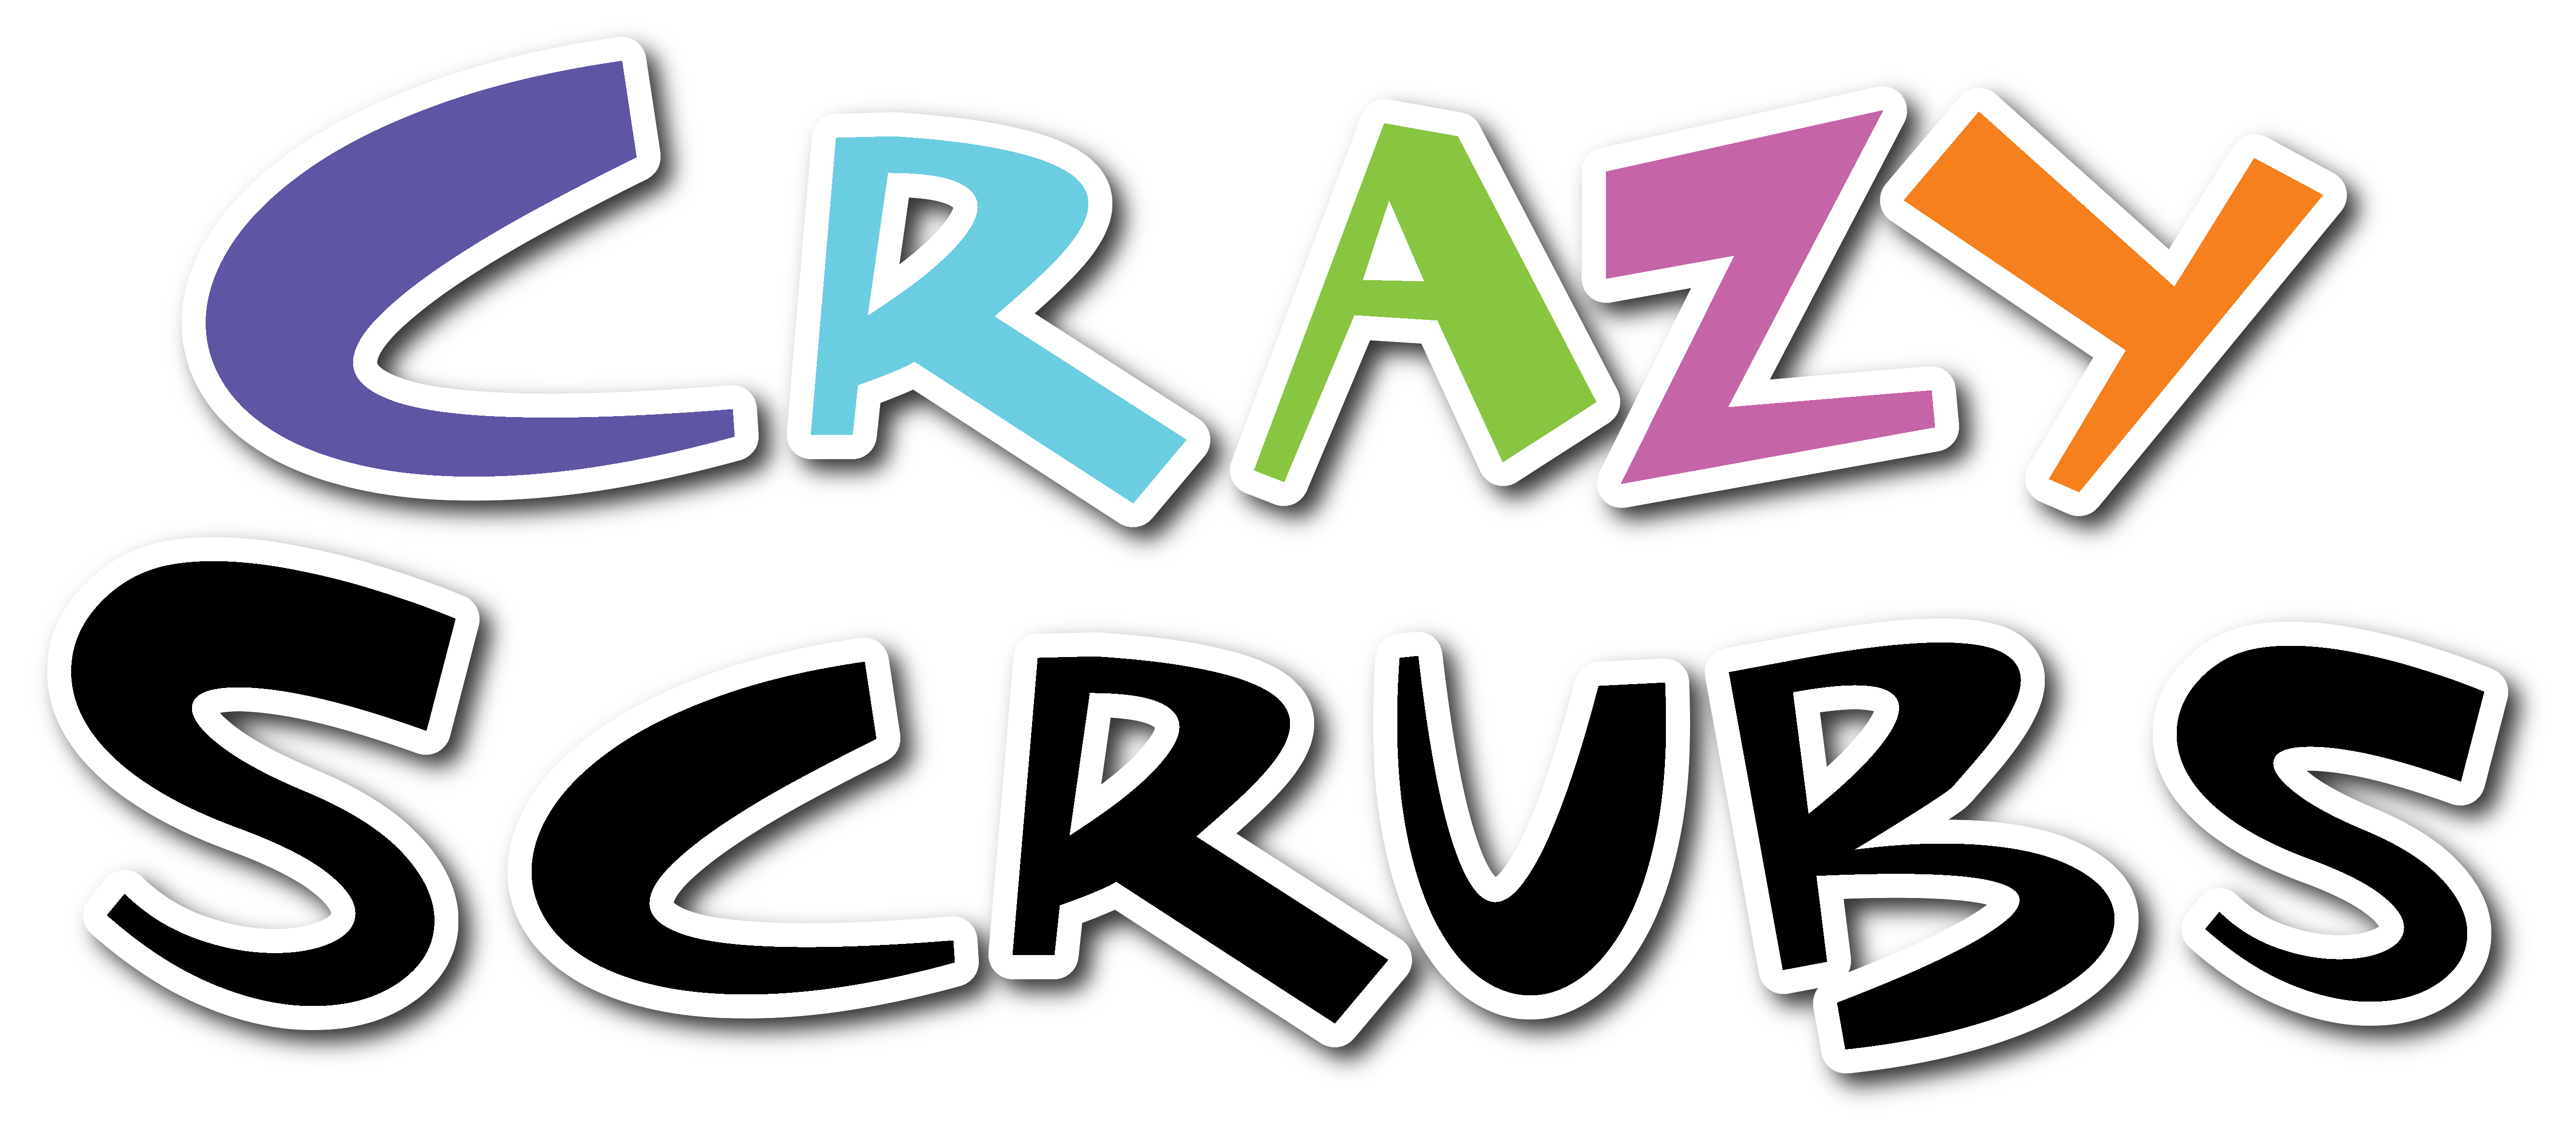 Scrubs Logo - Crazy Scrubs